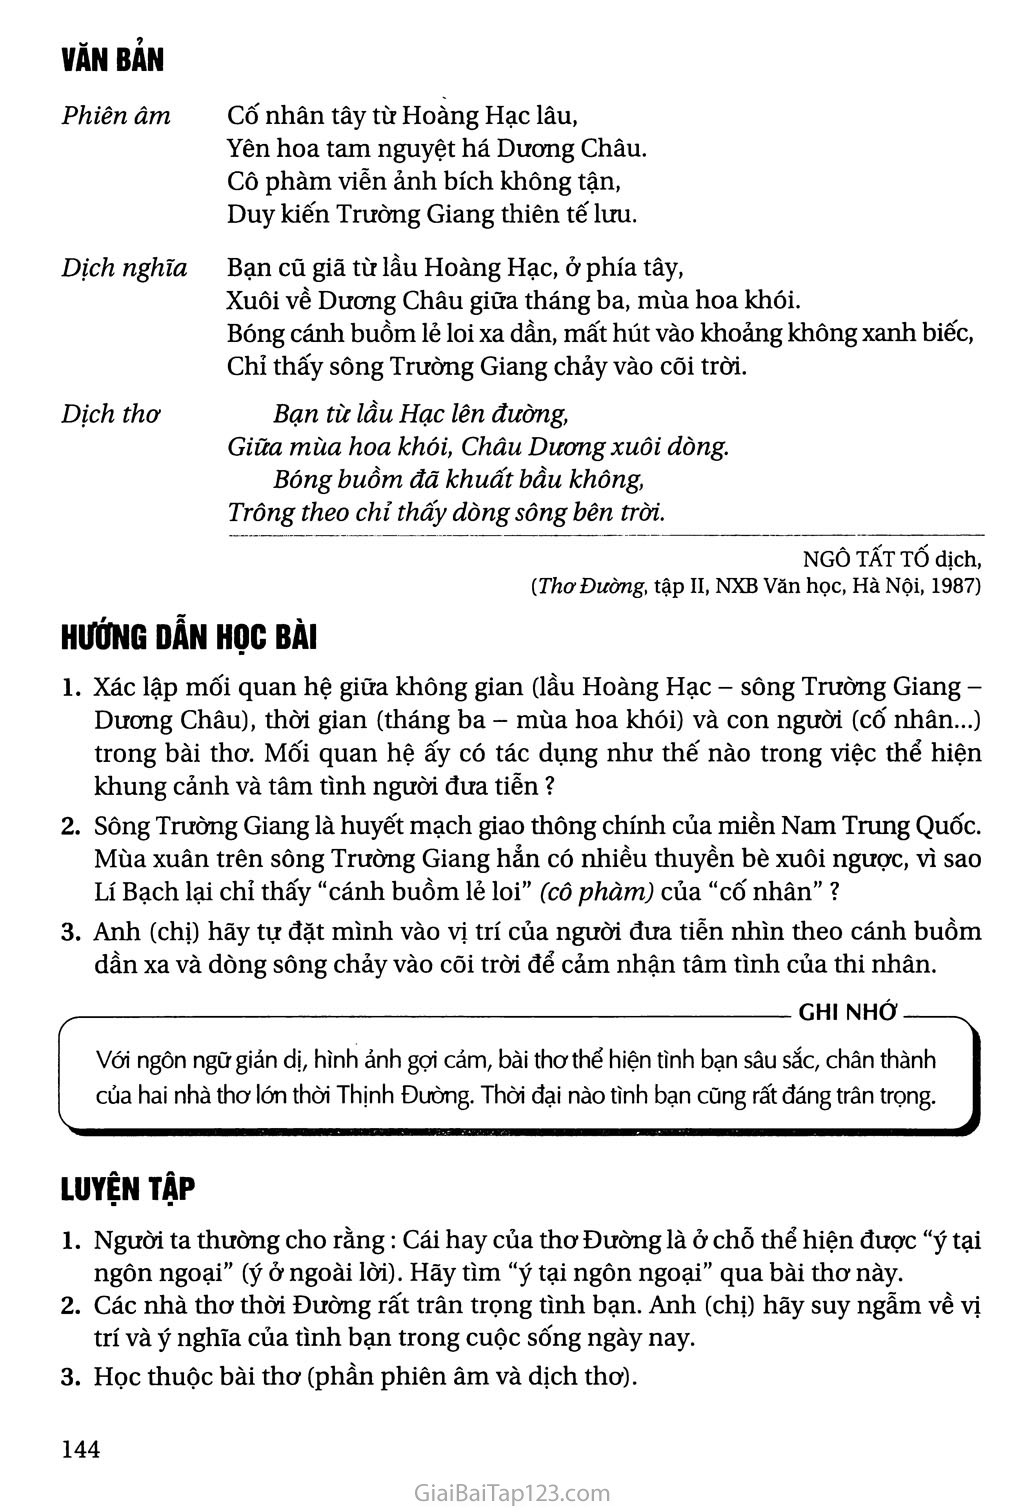 Tại lầu Hoàng Hạc tiễn Mạnh Hạo Nhiên đi Quảng Lăng (Hoàng Hạc lâu tống Mạnh Hạo Nhiên chi Quảng Lăng) trang 2